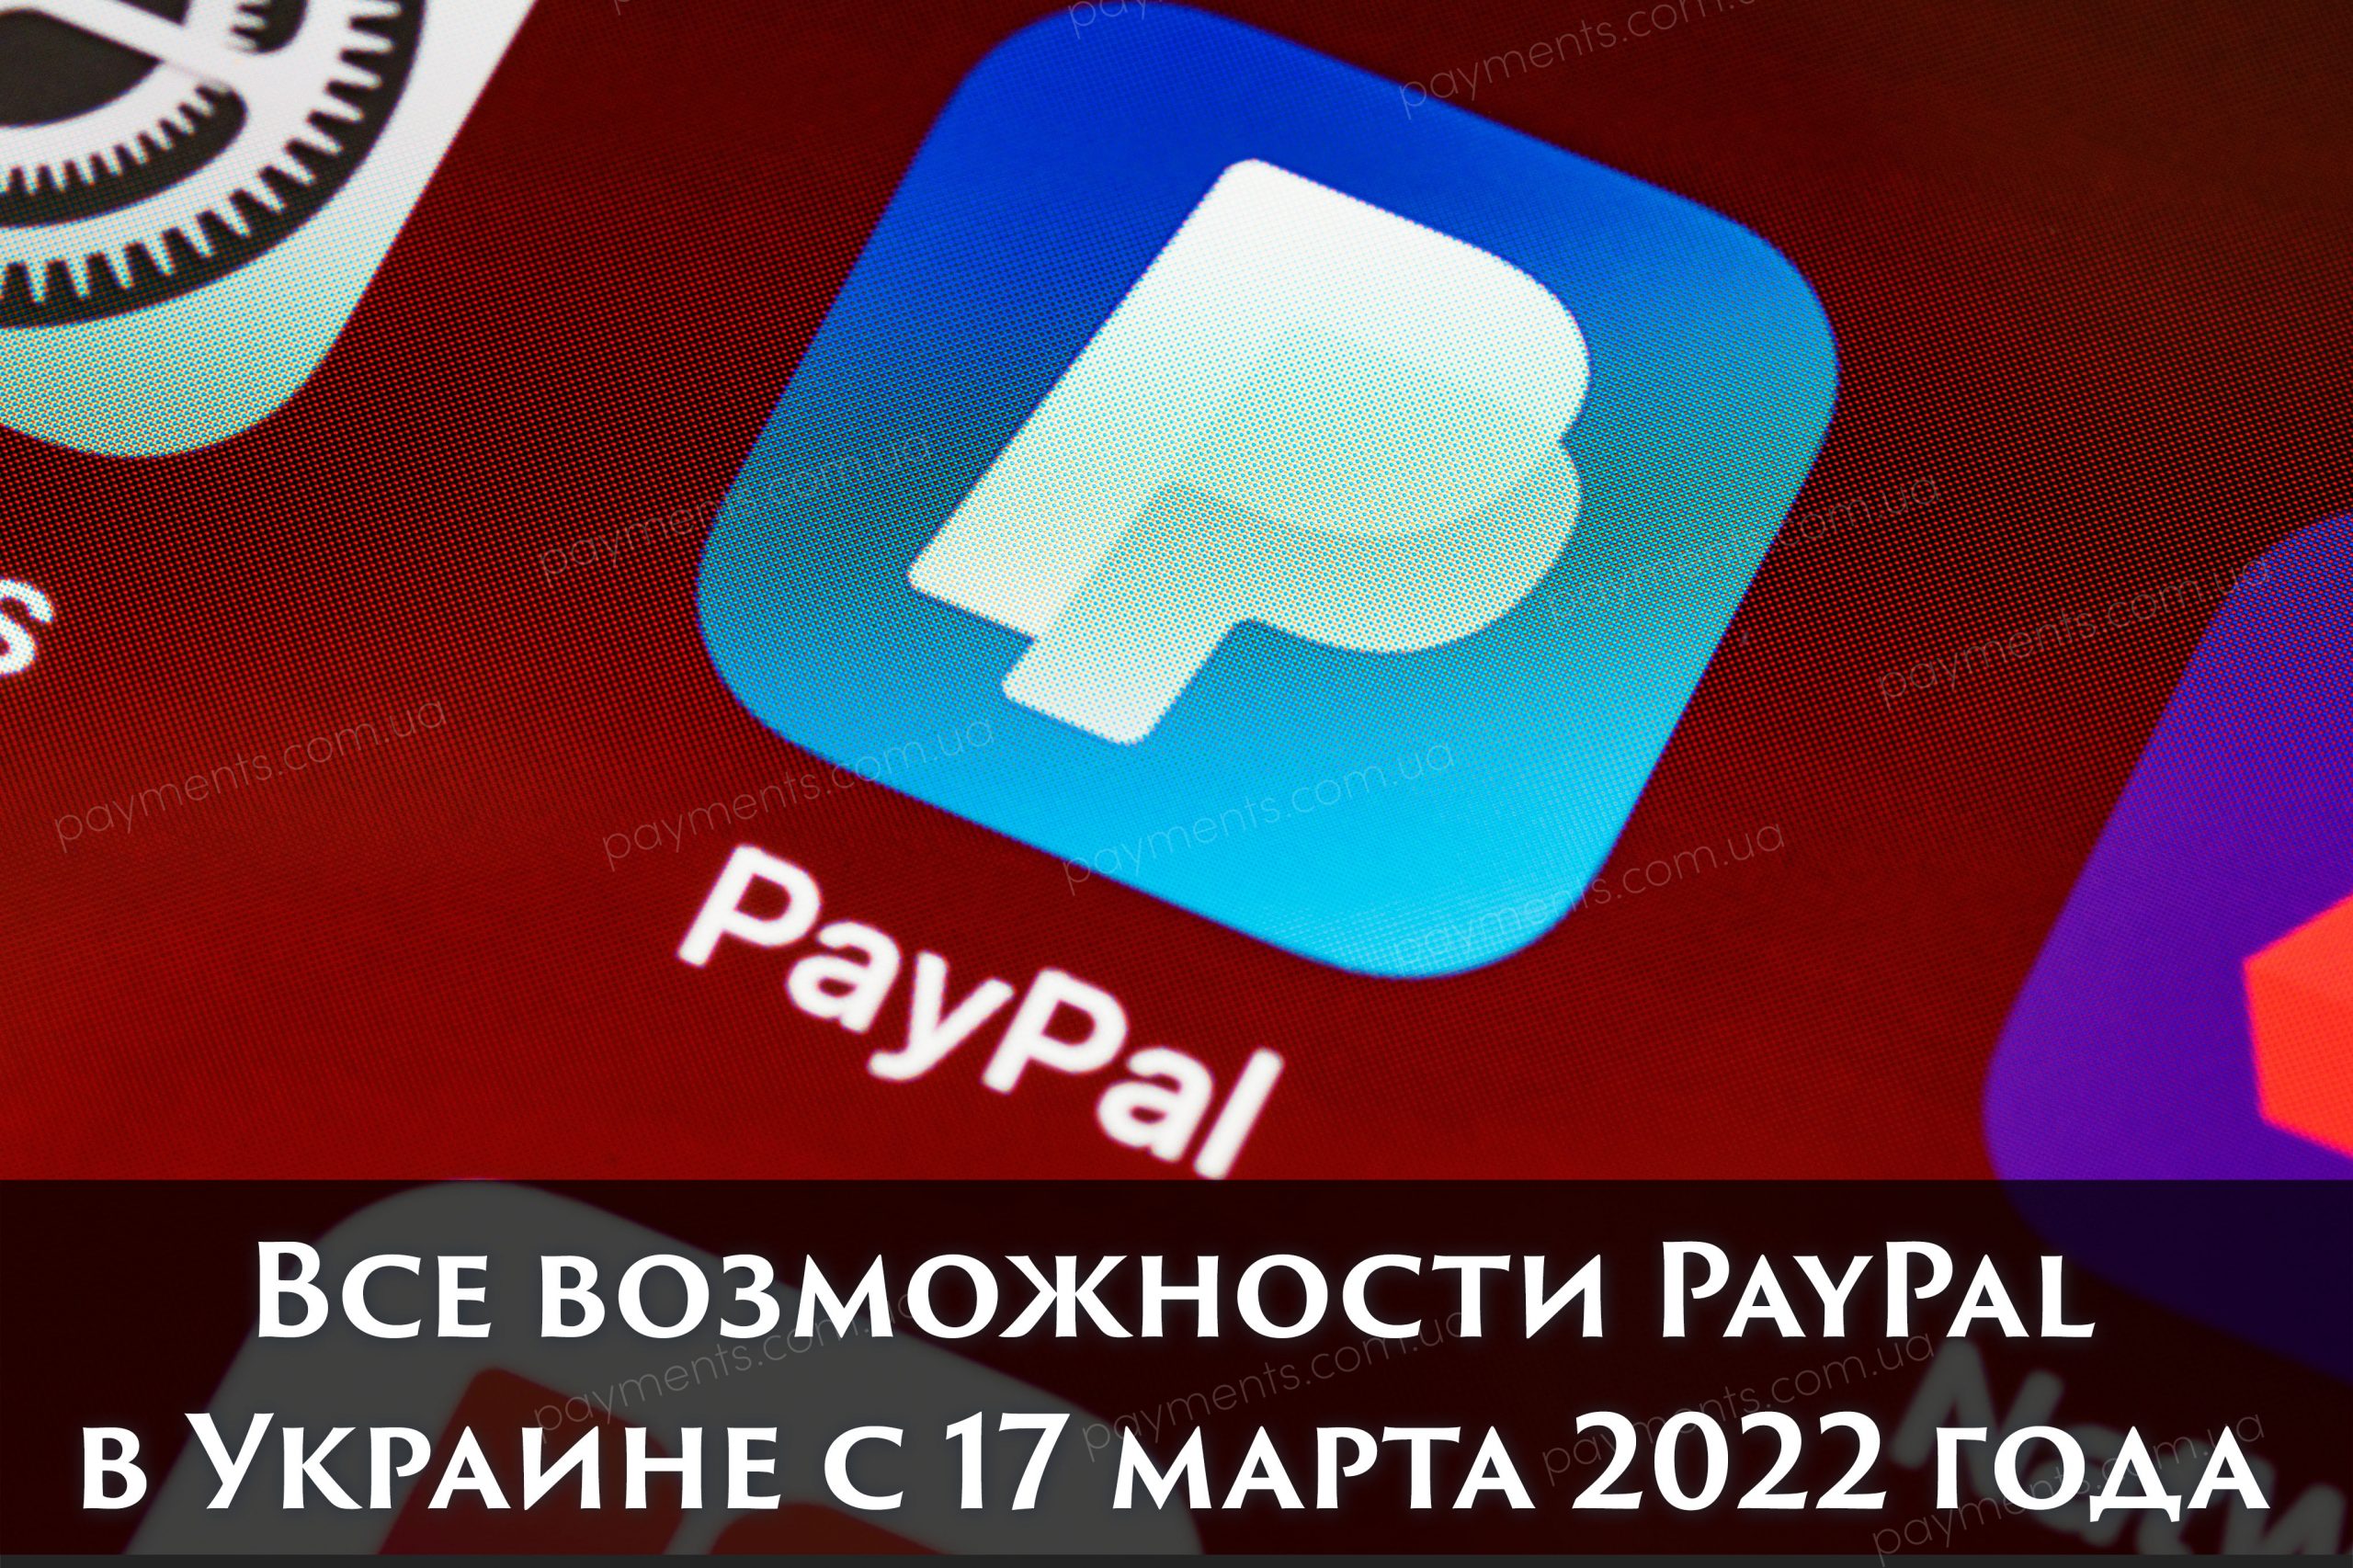 Все возможности оплаты и приема платежей через PayPal